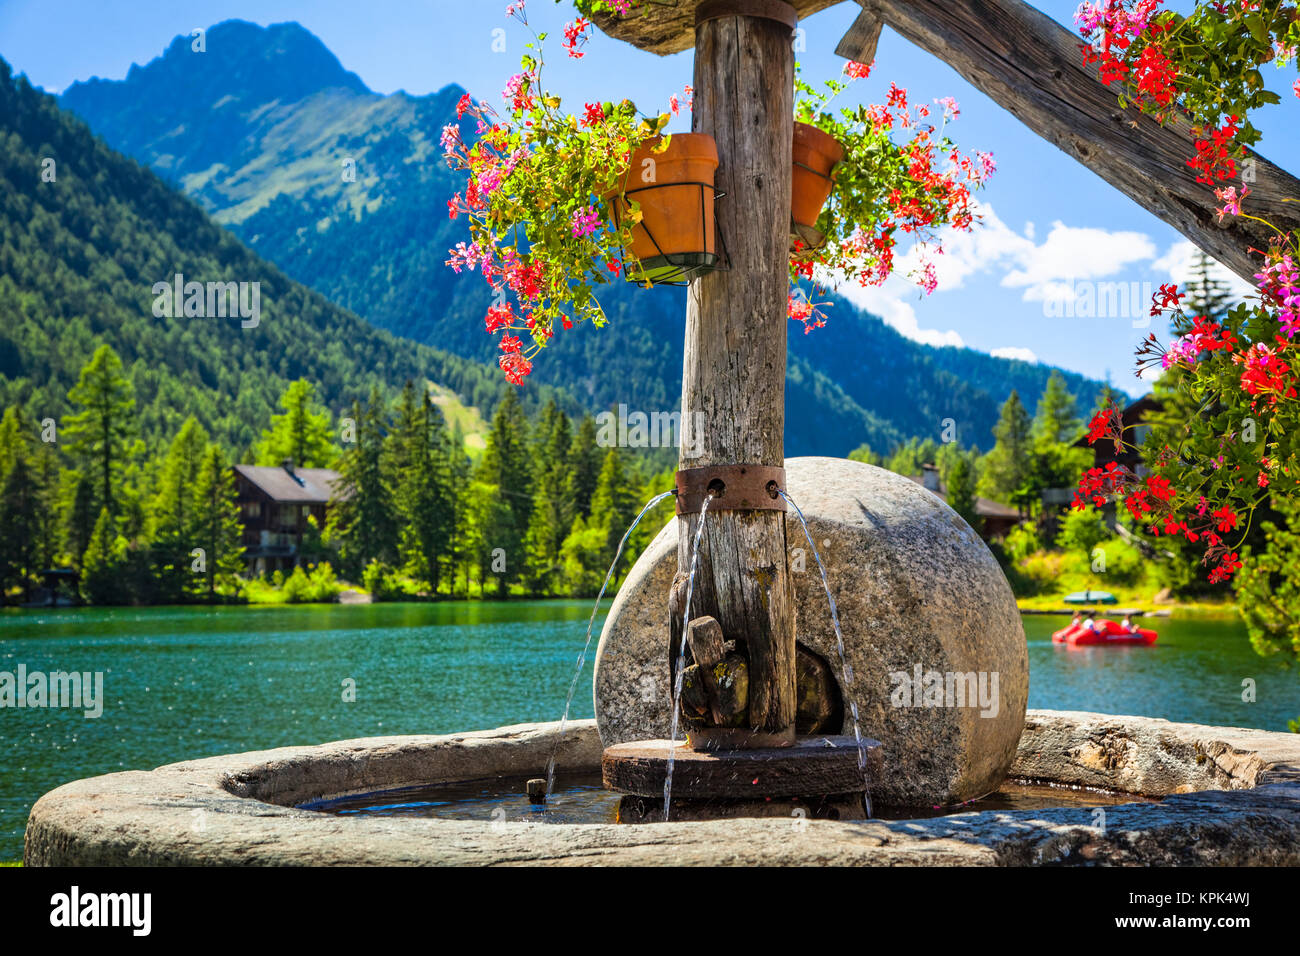 Nahaufnahme einer Steinbrunnen mit blumentöpfe von Champex See und Gebirge  im Hintergrund; Champex, Wallis, Schweiz Stockfotografie - Alamy